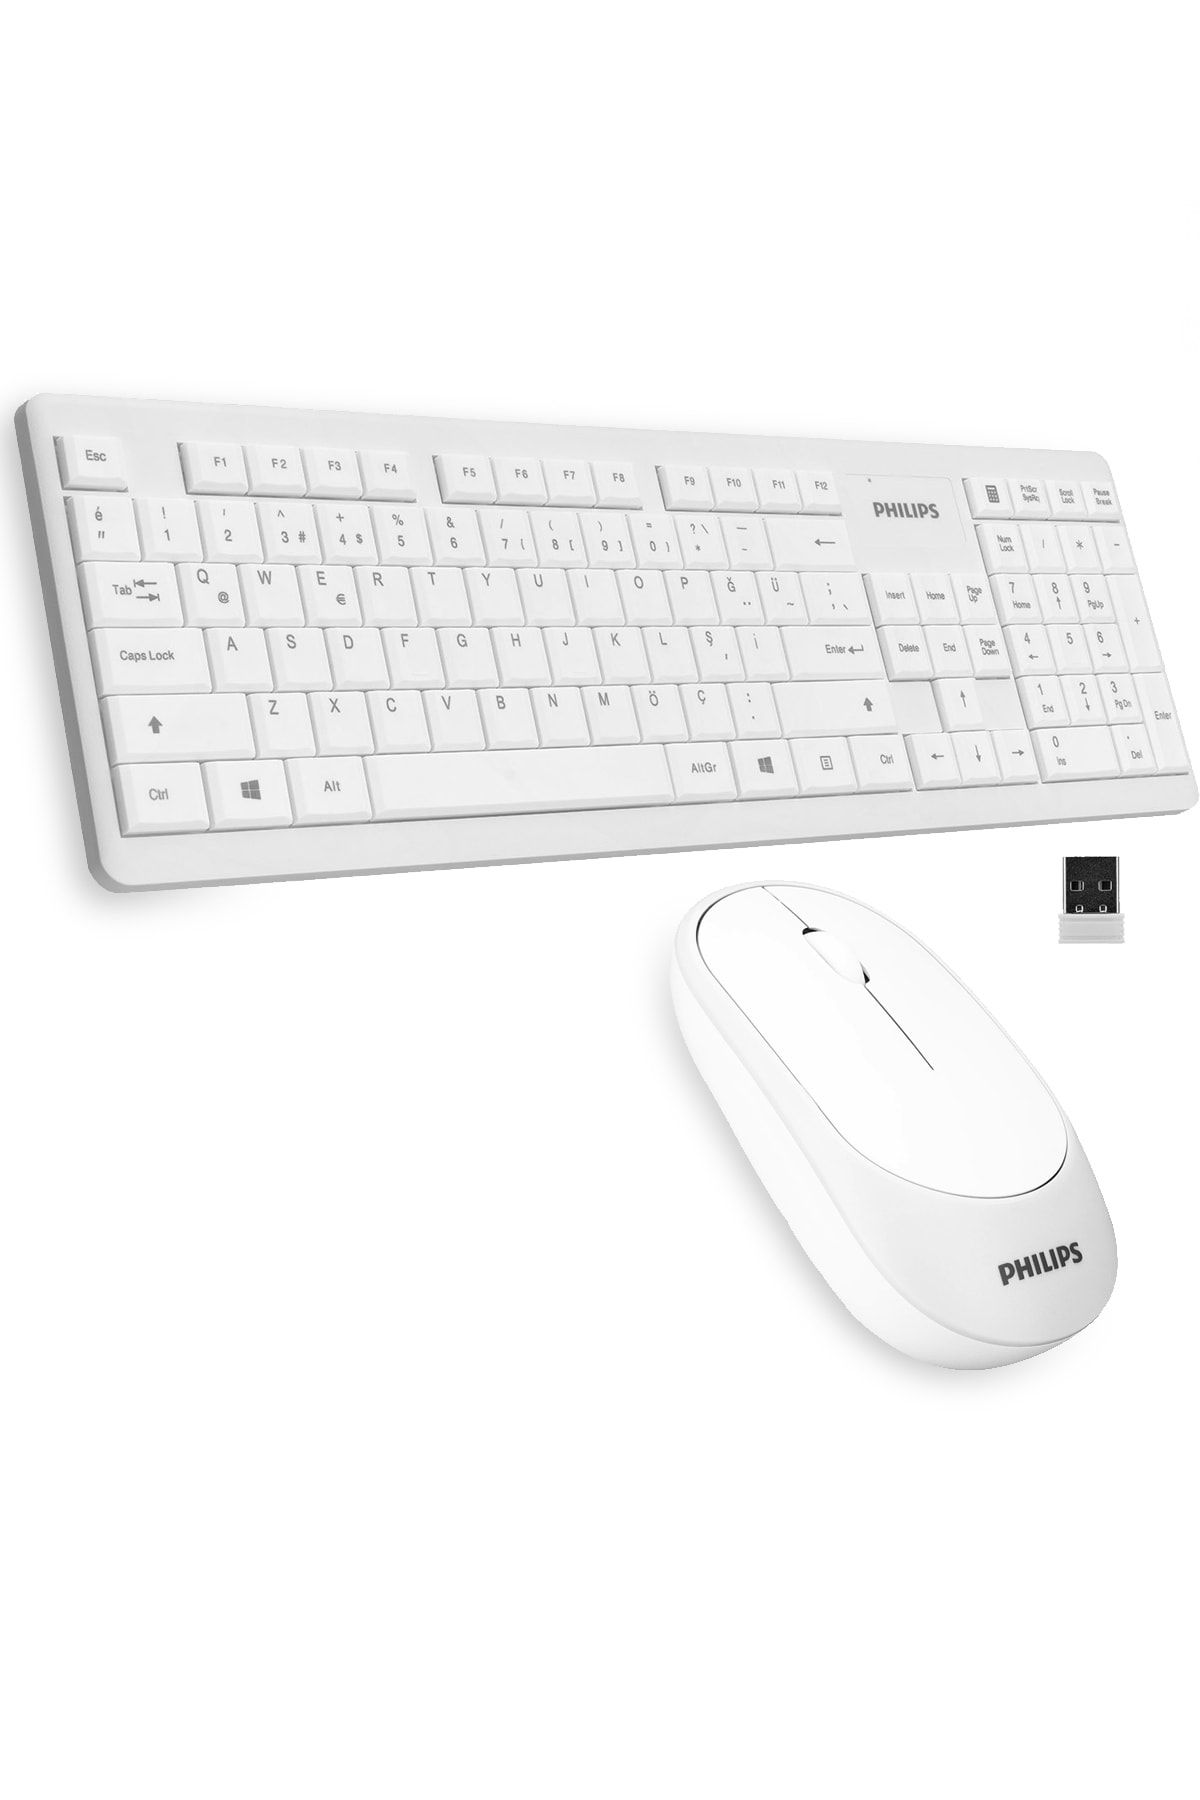 Philips Spt6314 C314 Türkçe Q Wireless Beyaz Kablosuz Klavye Mouse Seti